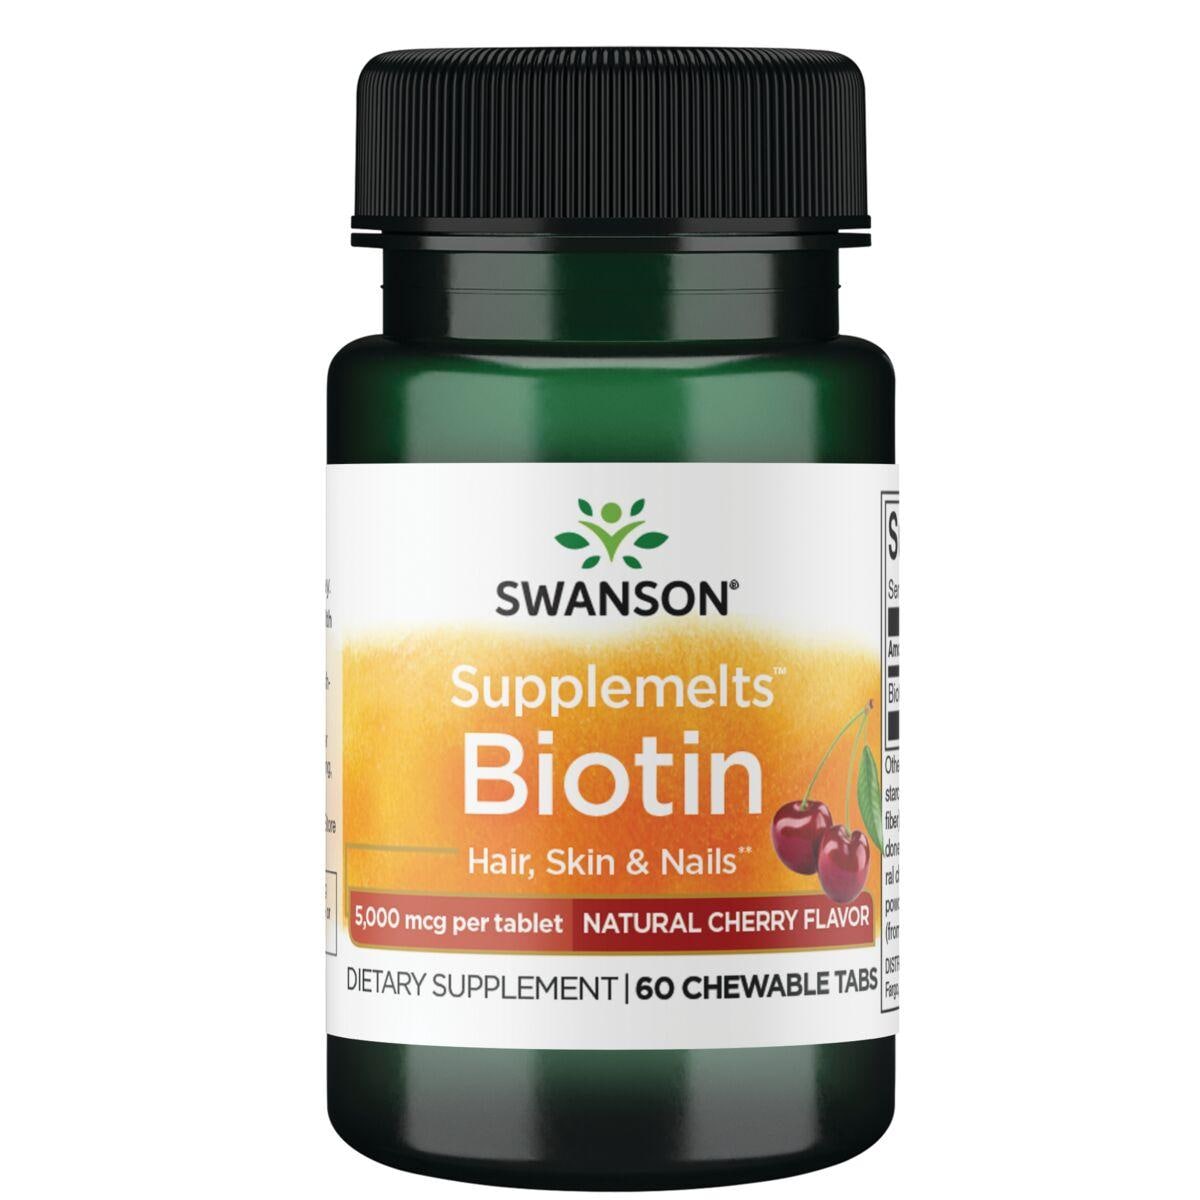 Swanson Premium Supplemelts Biotin - Natural Cherry Flavor Vitamin | 5000 mcg | 60 Chewables